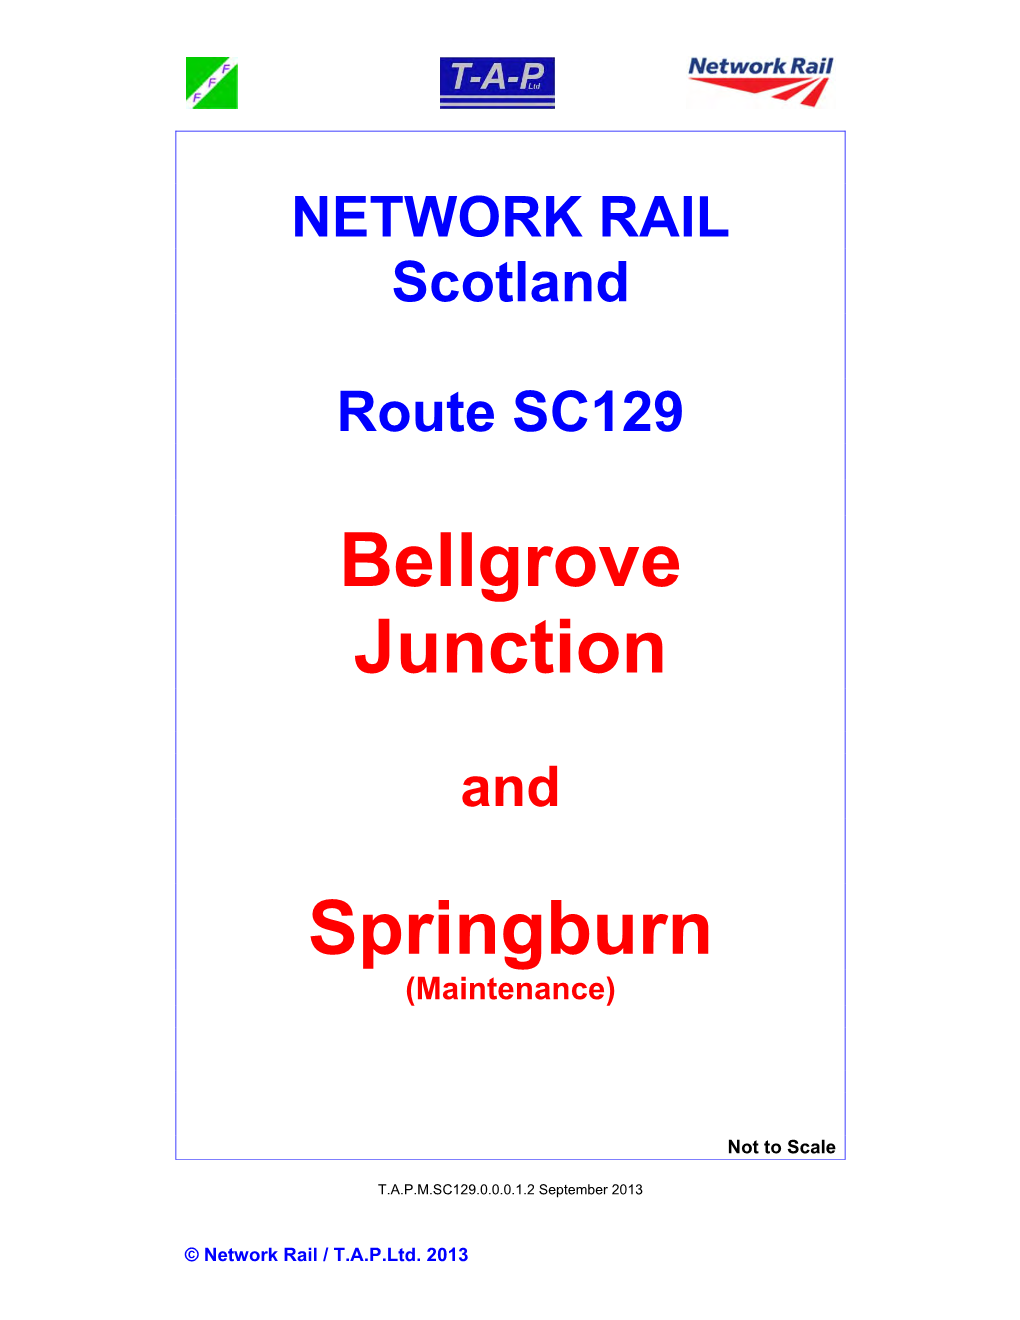 Bellgrove Junction Springburn